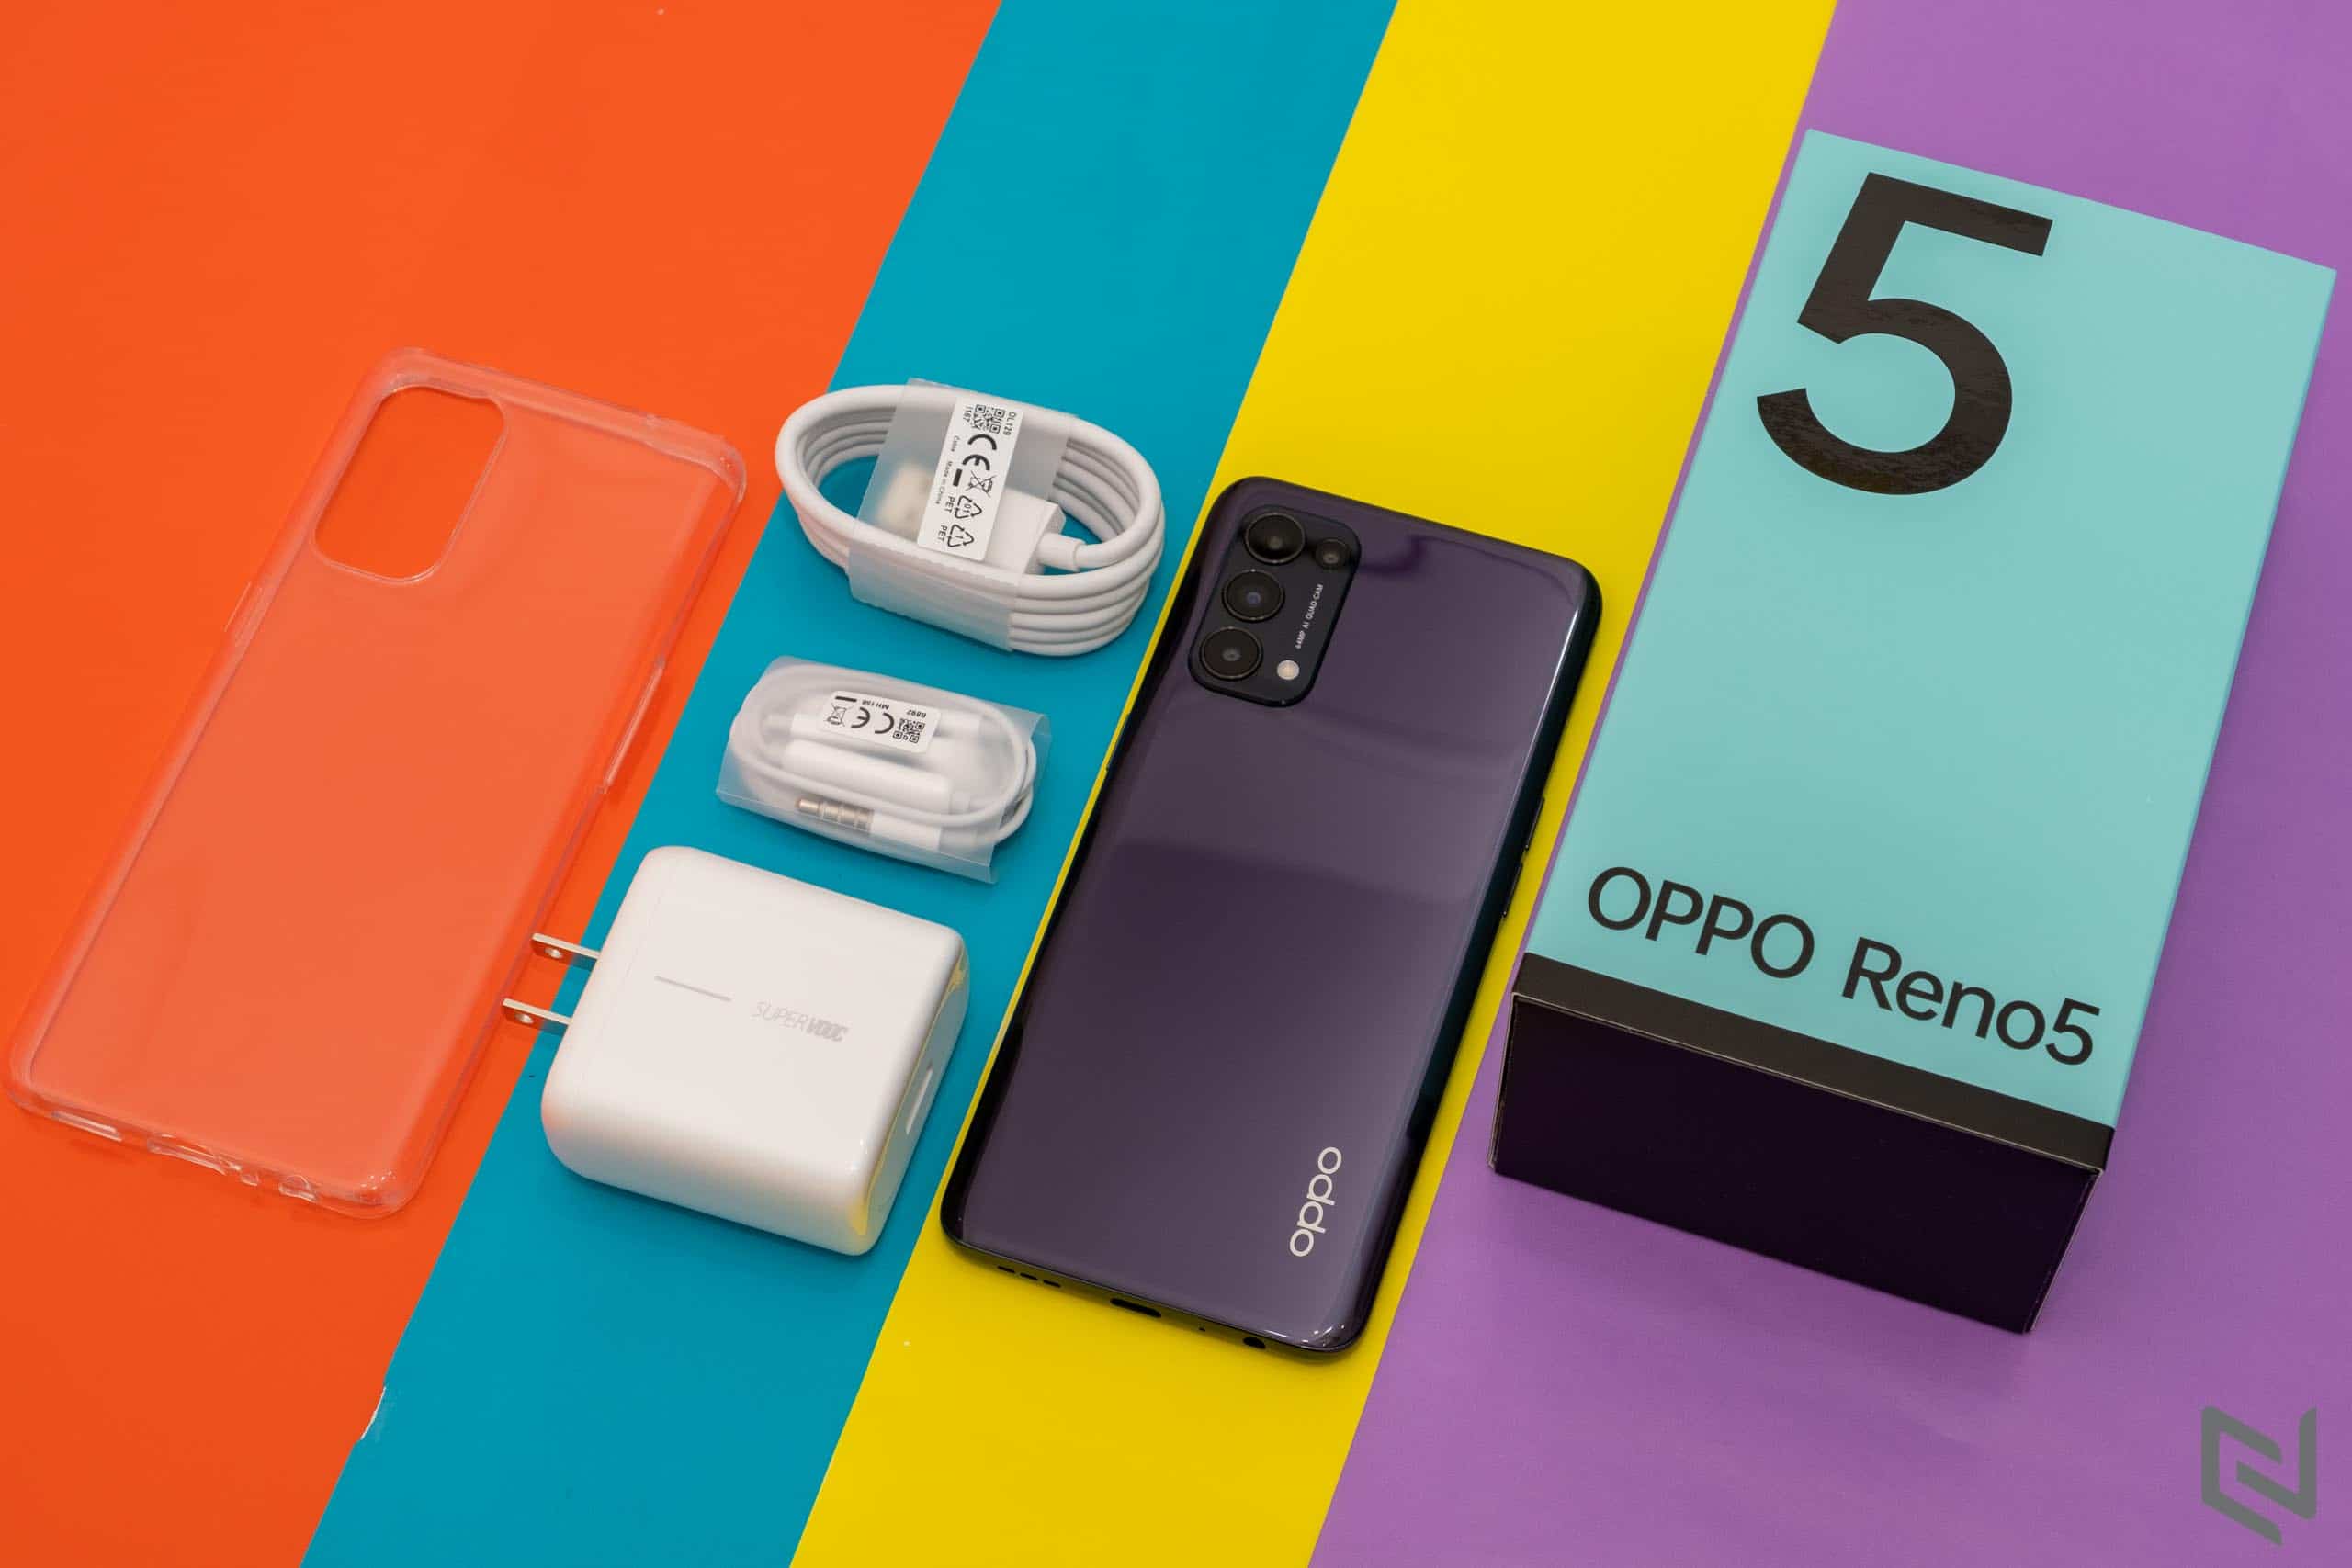 OPPO Reno5: Vẻ đẹp hoàn hảo, tốc độ vượt trội, những chụp ảnh và quay phim như chuyên nghiệp. Oppo Reno5 là sự lựa chọn thông minh nhất cho những ai đang tìm kiếm một chiếc smartphone mới với nhiều tính năng hiện đại và đẳng cấp.